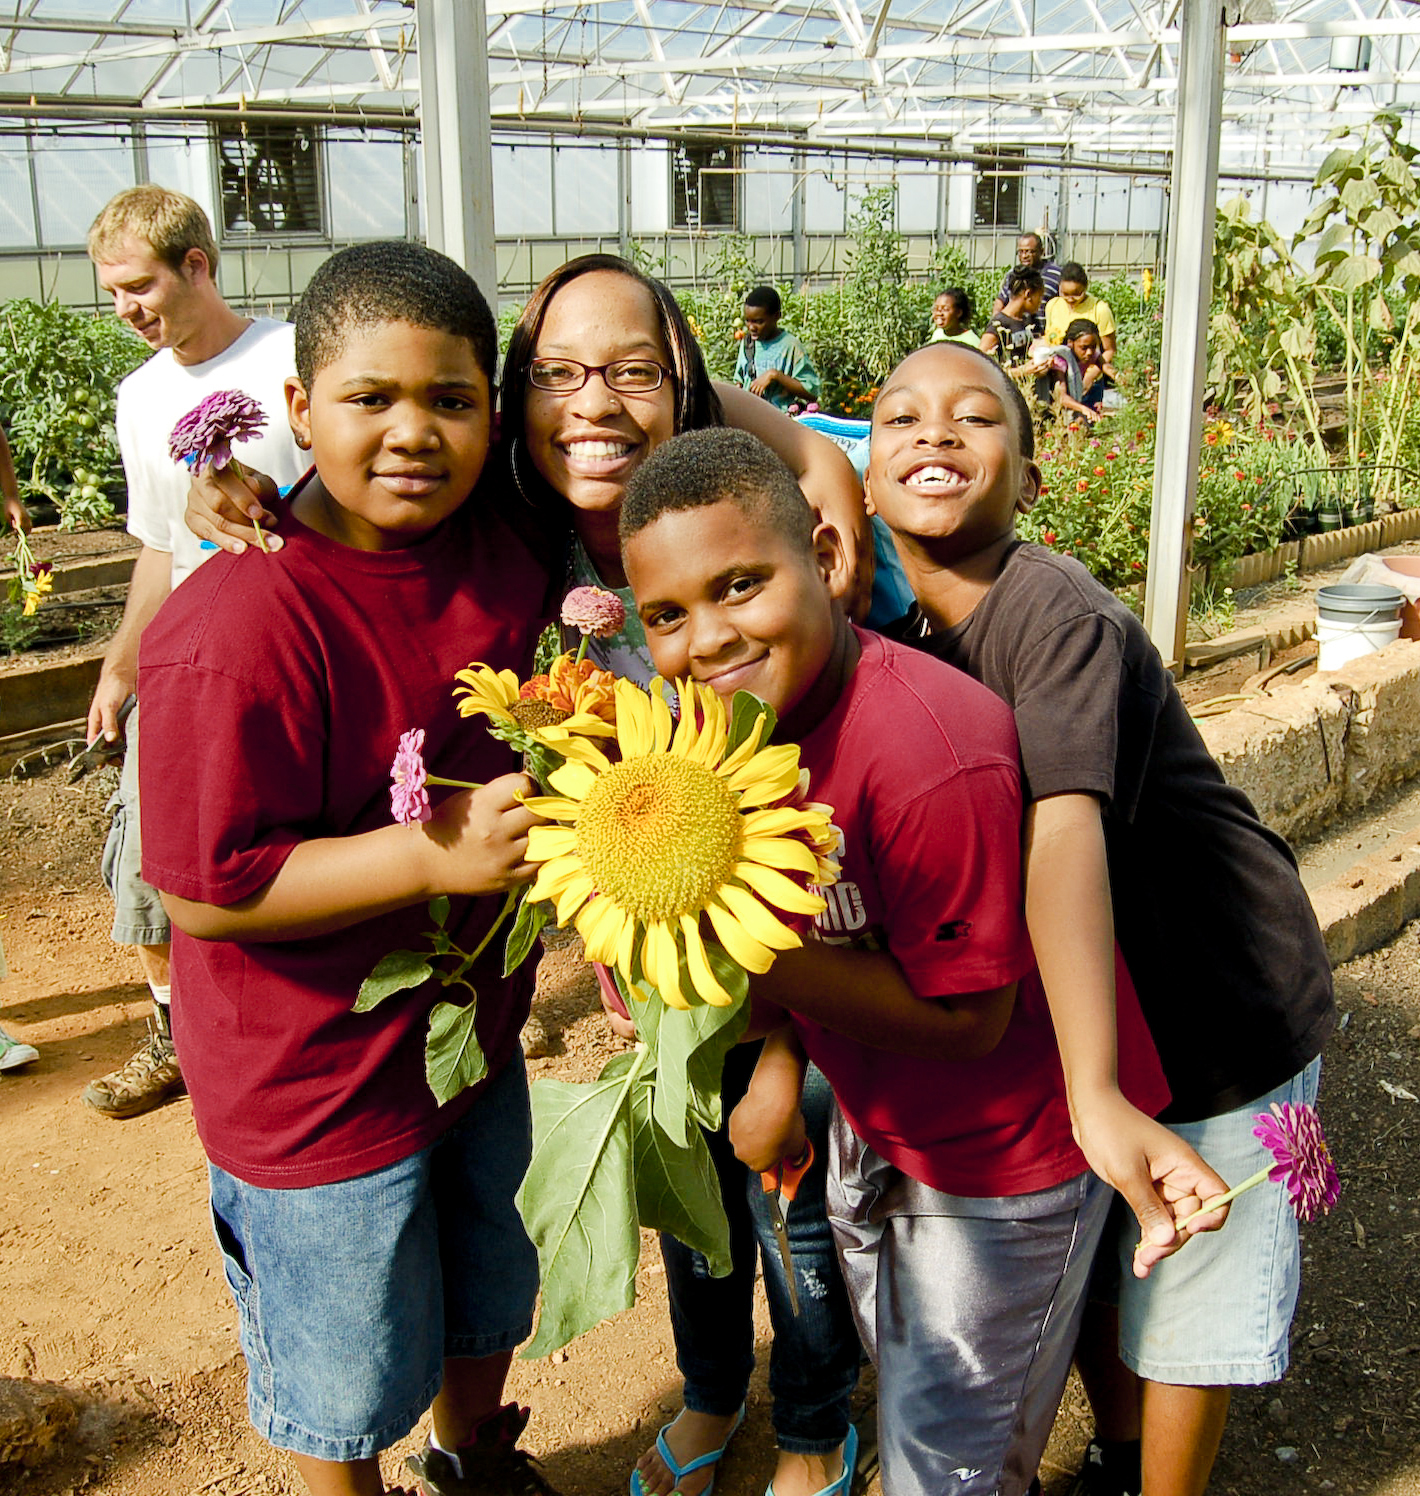 Children with sunflower.